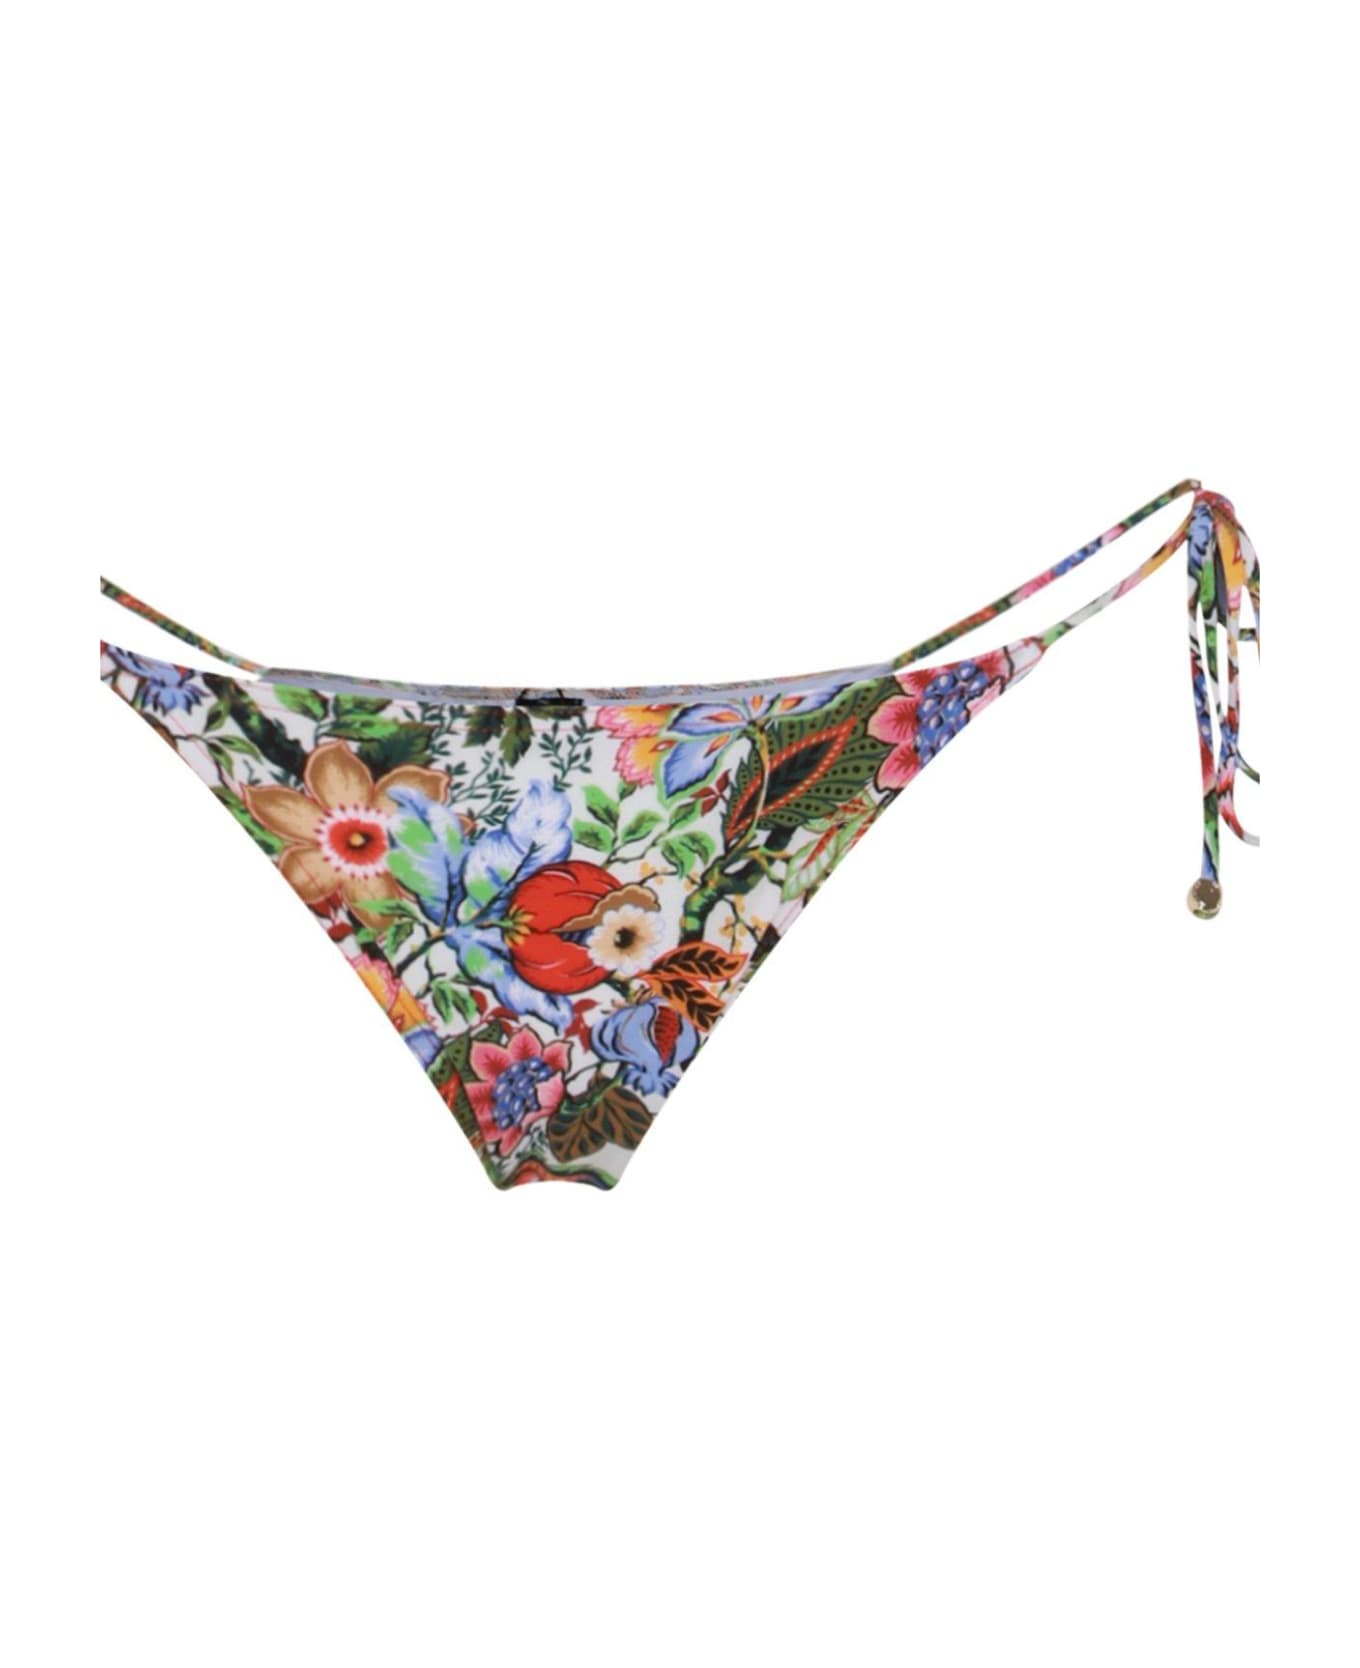 Etro Bouquet-inspired Printed Triangle Bikini - Multicolor